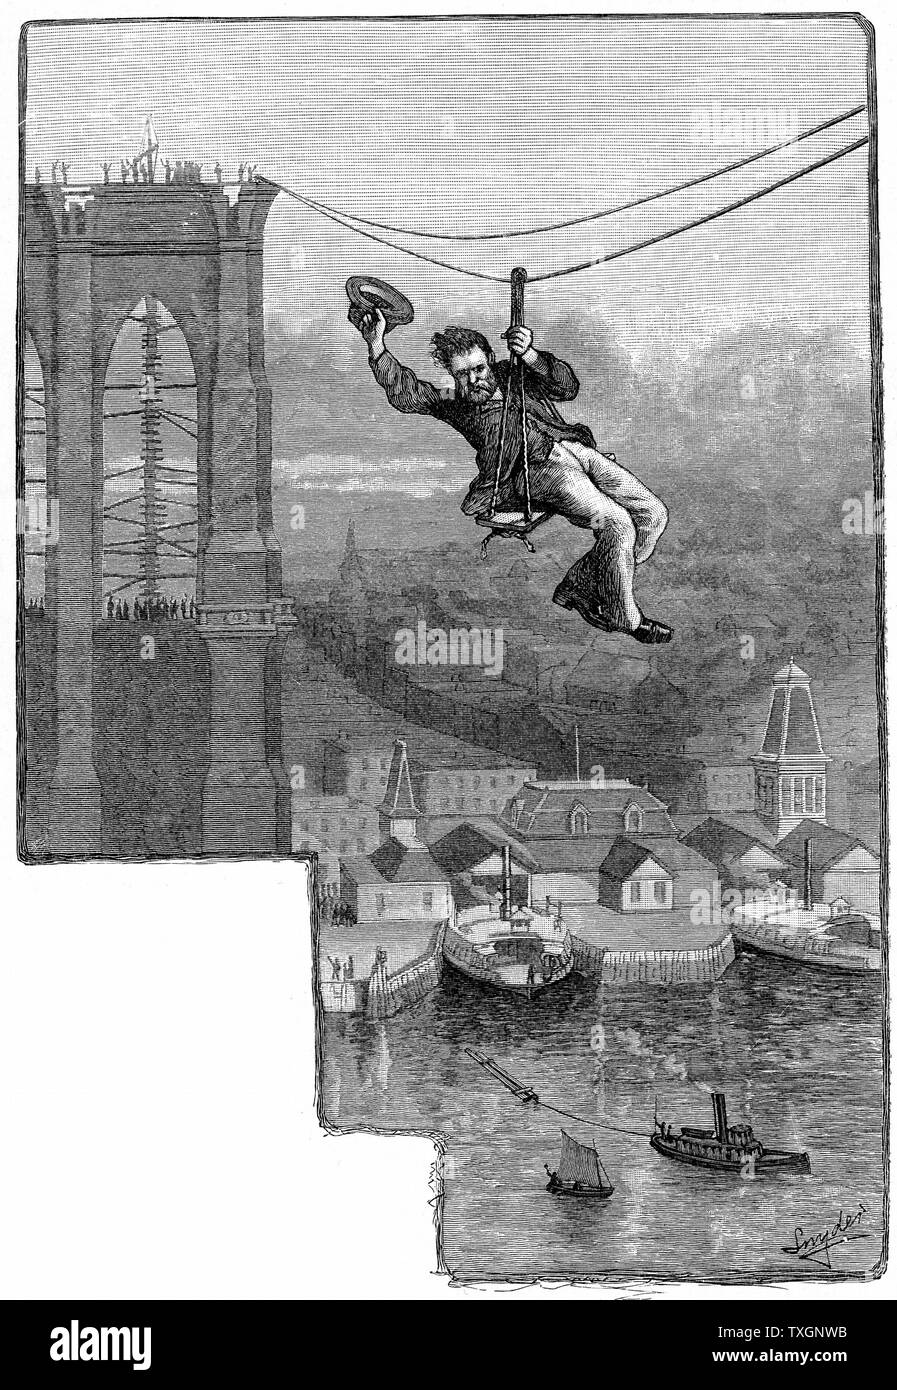 Brooklyn Suspension Bridge, New York: E.F. Farrington, Kfz-meister auf der Brücke, Prüfung der erste Span der Kabel. Holzstich veröffentlicht 1883, das Jahr, in dem die Brücke eröffnet. Entworfen und gebaut von J.A. und W.A. Roebling. Stockfoto